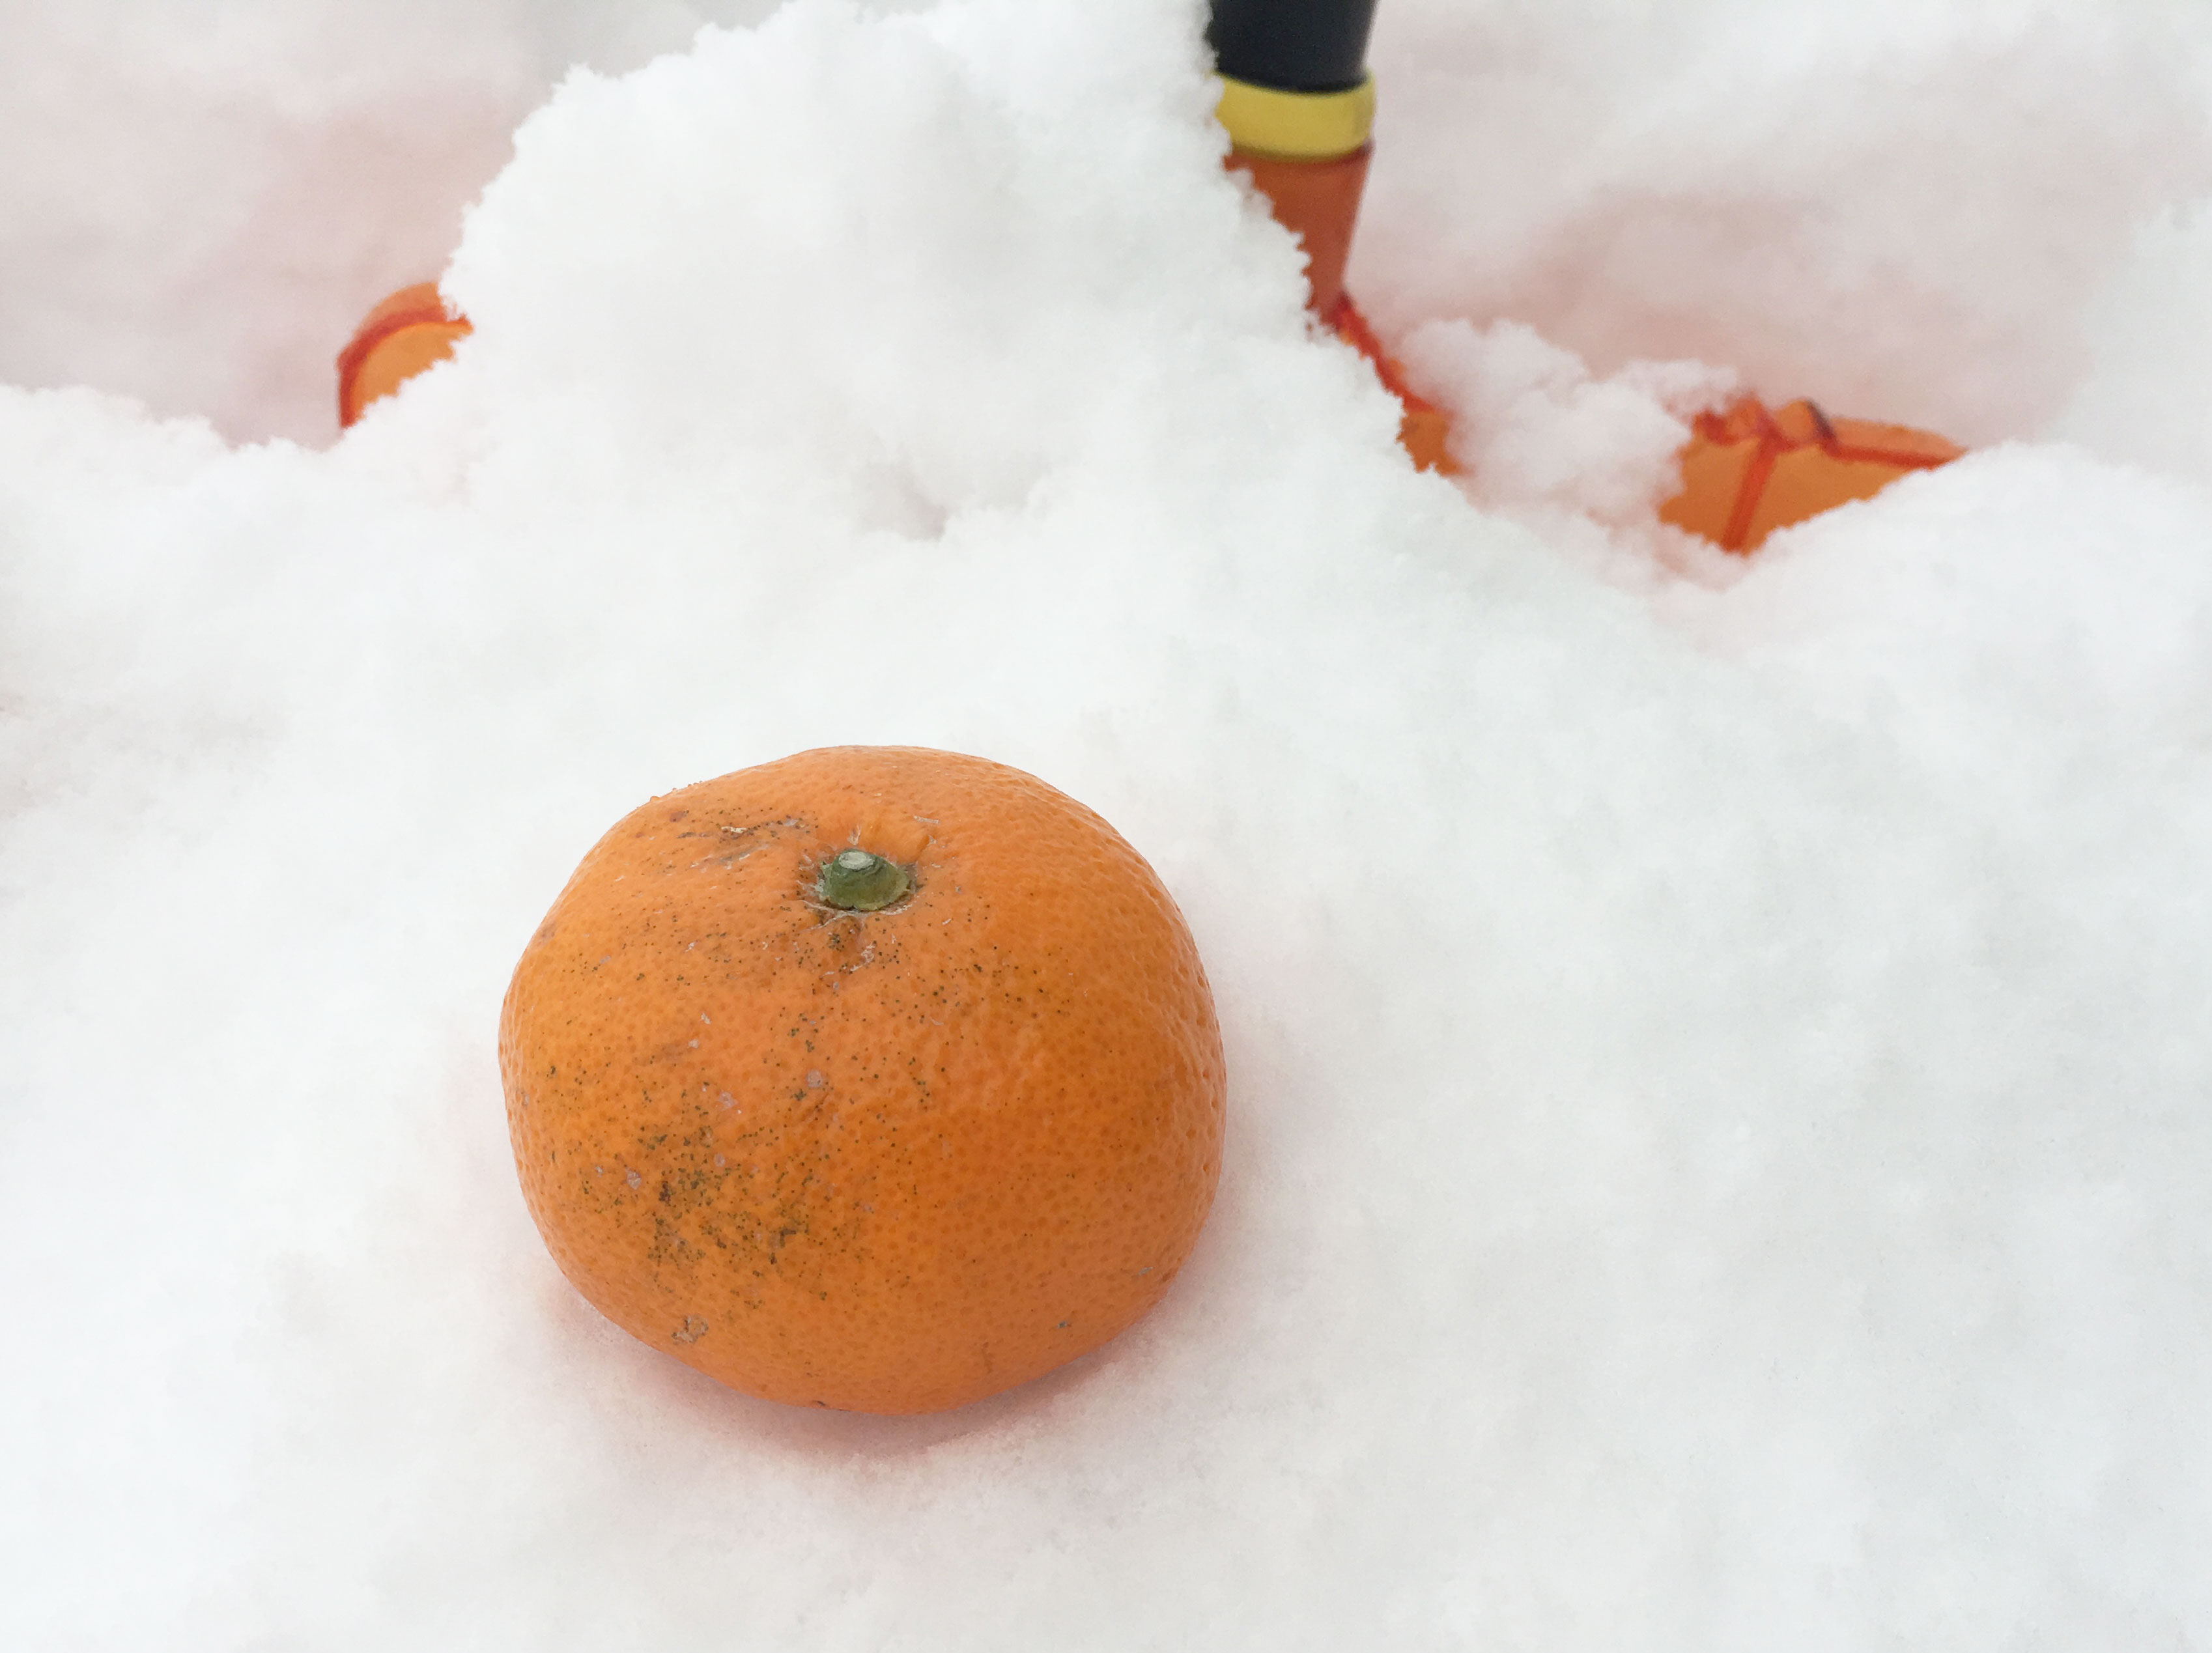 雪で 冷凍みかん を作りたい 死ぬほど雪があるのでミカンを埋めてみた ドーナツやゼリーも埋めてみた ロケットニュース24